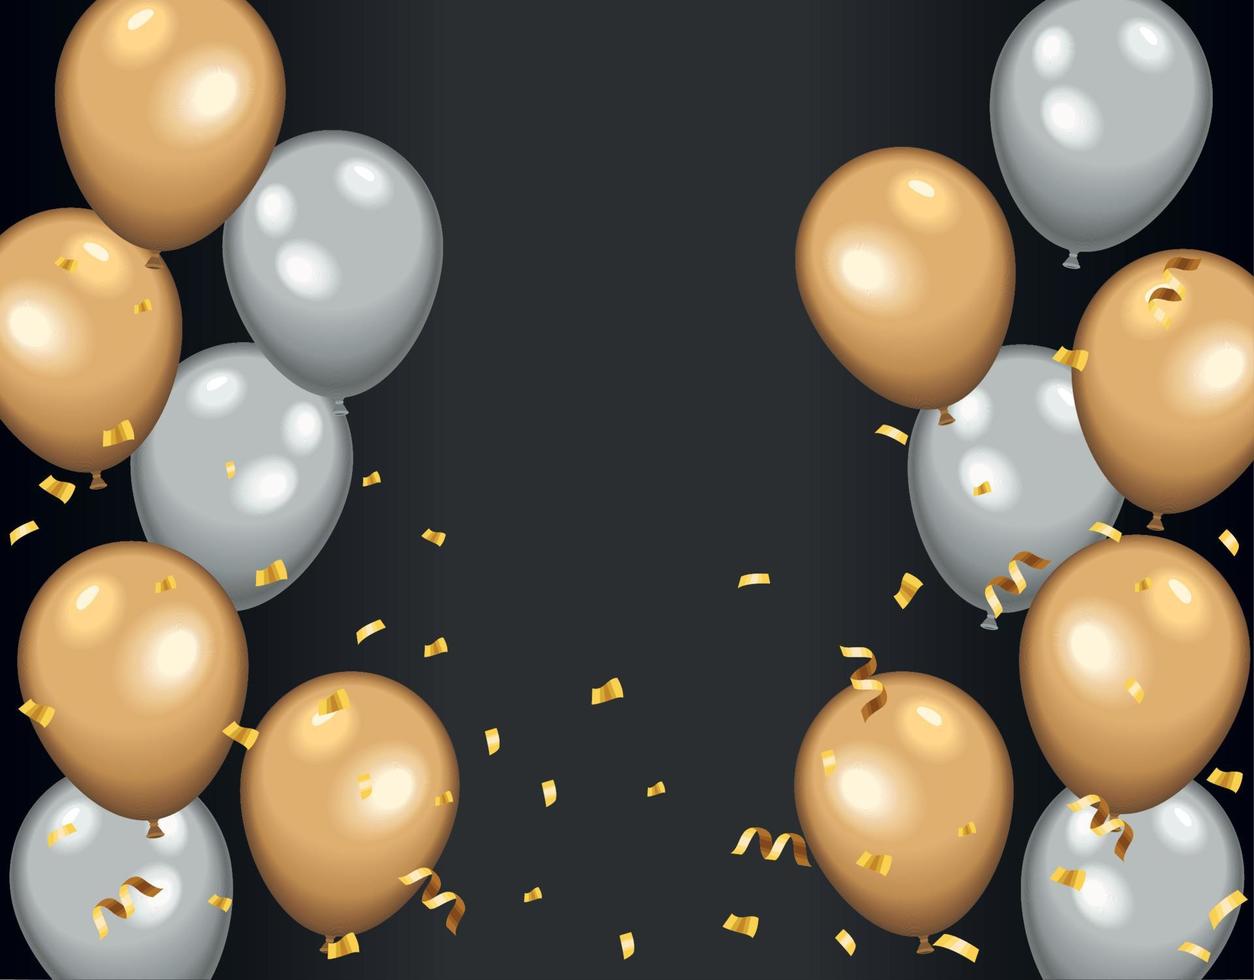 globos plateados y dorados helio 14174833 Vector en Vecteezy